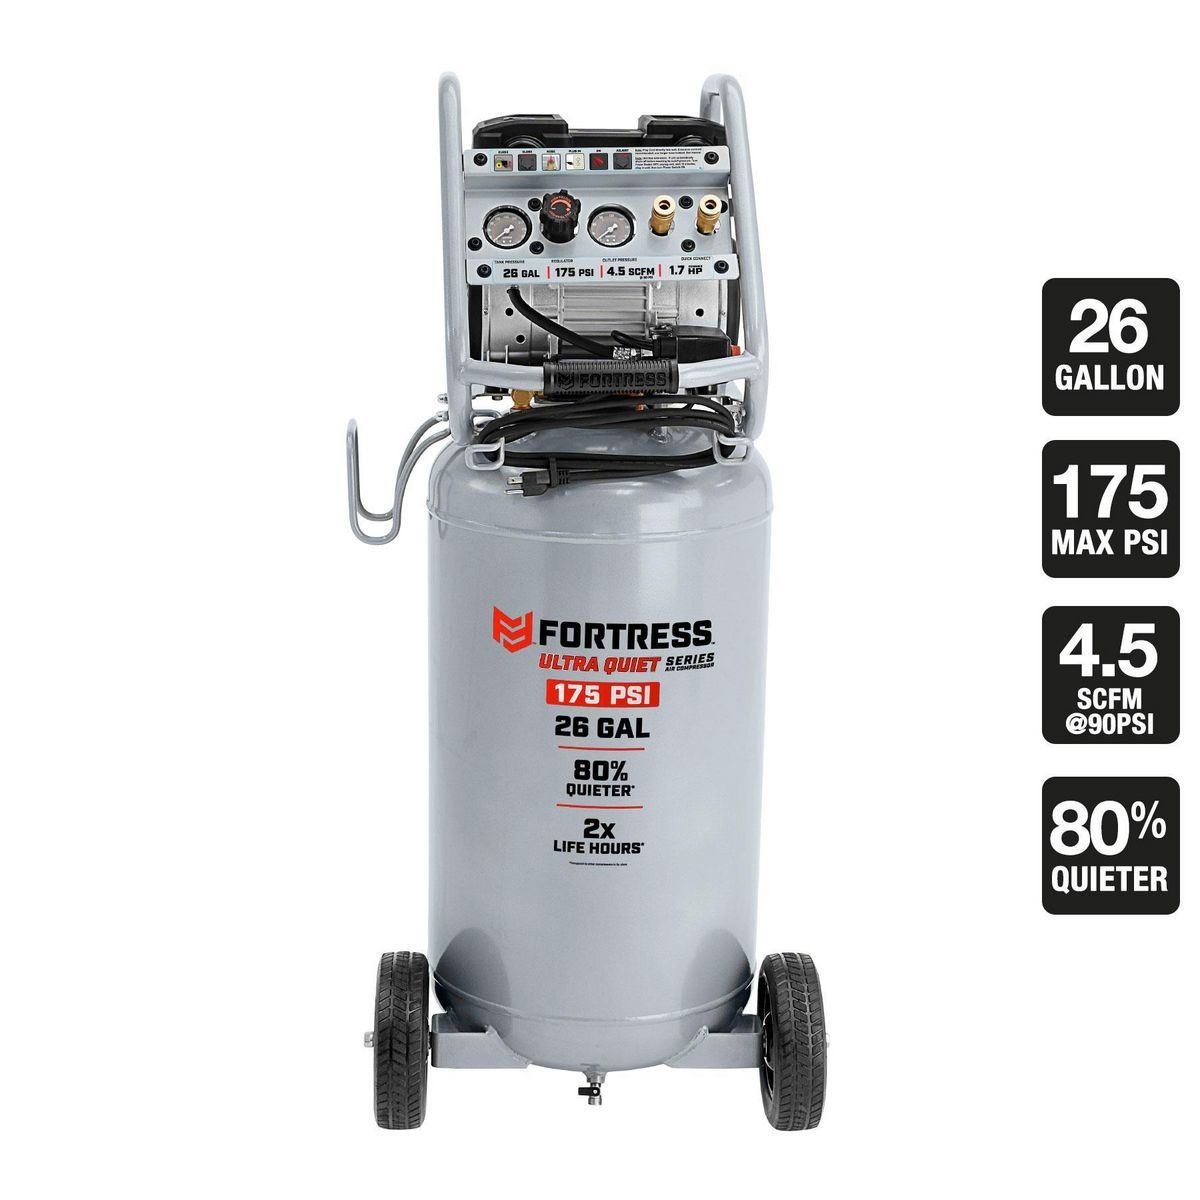 FORTRESS 26 Gallon  175 PSI Ultra Quiet Vertical Shop/Auto Air Compressor